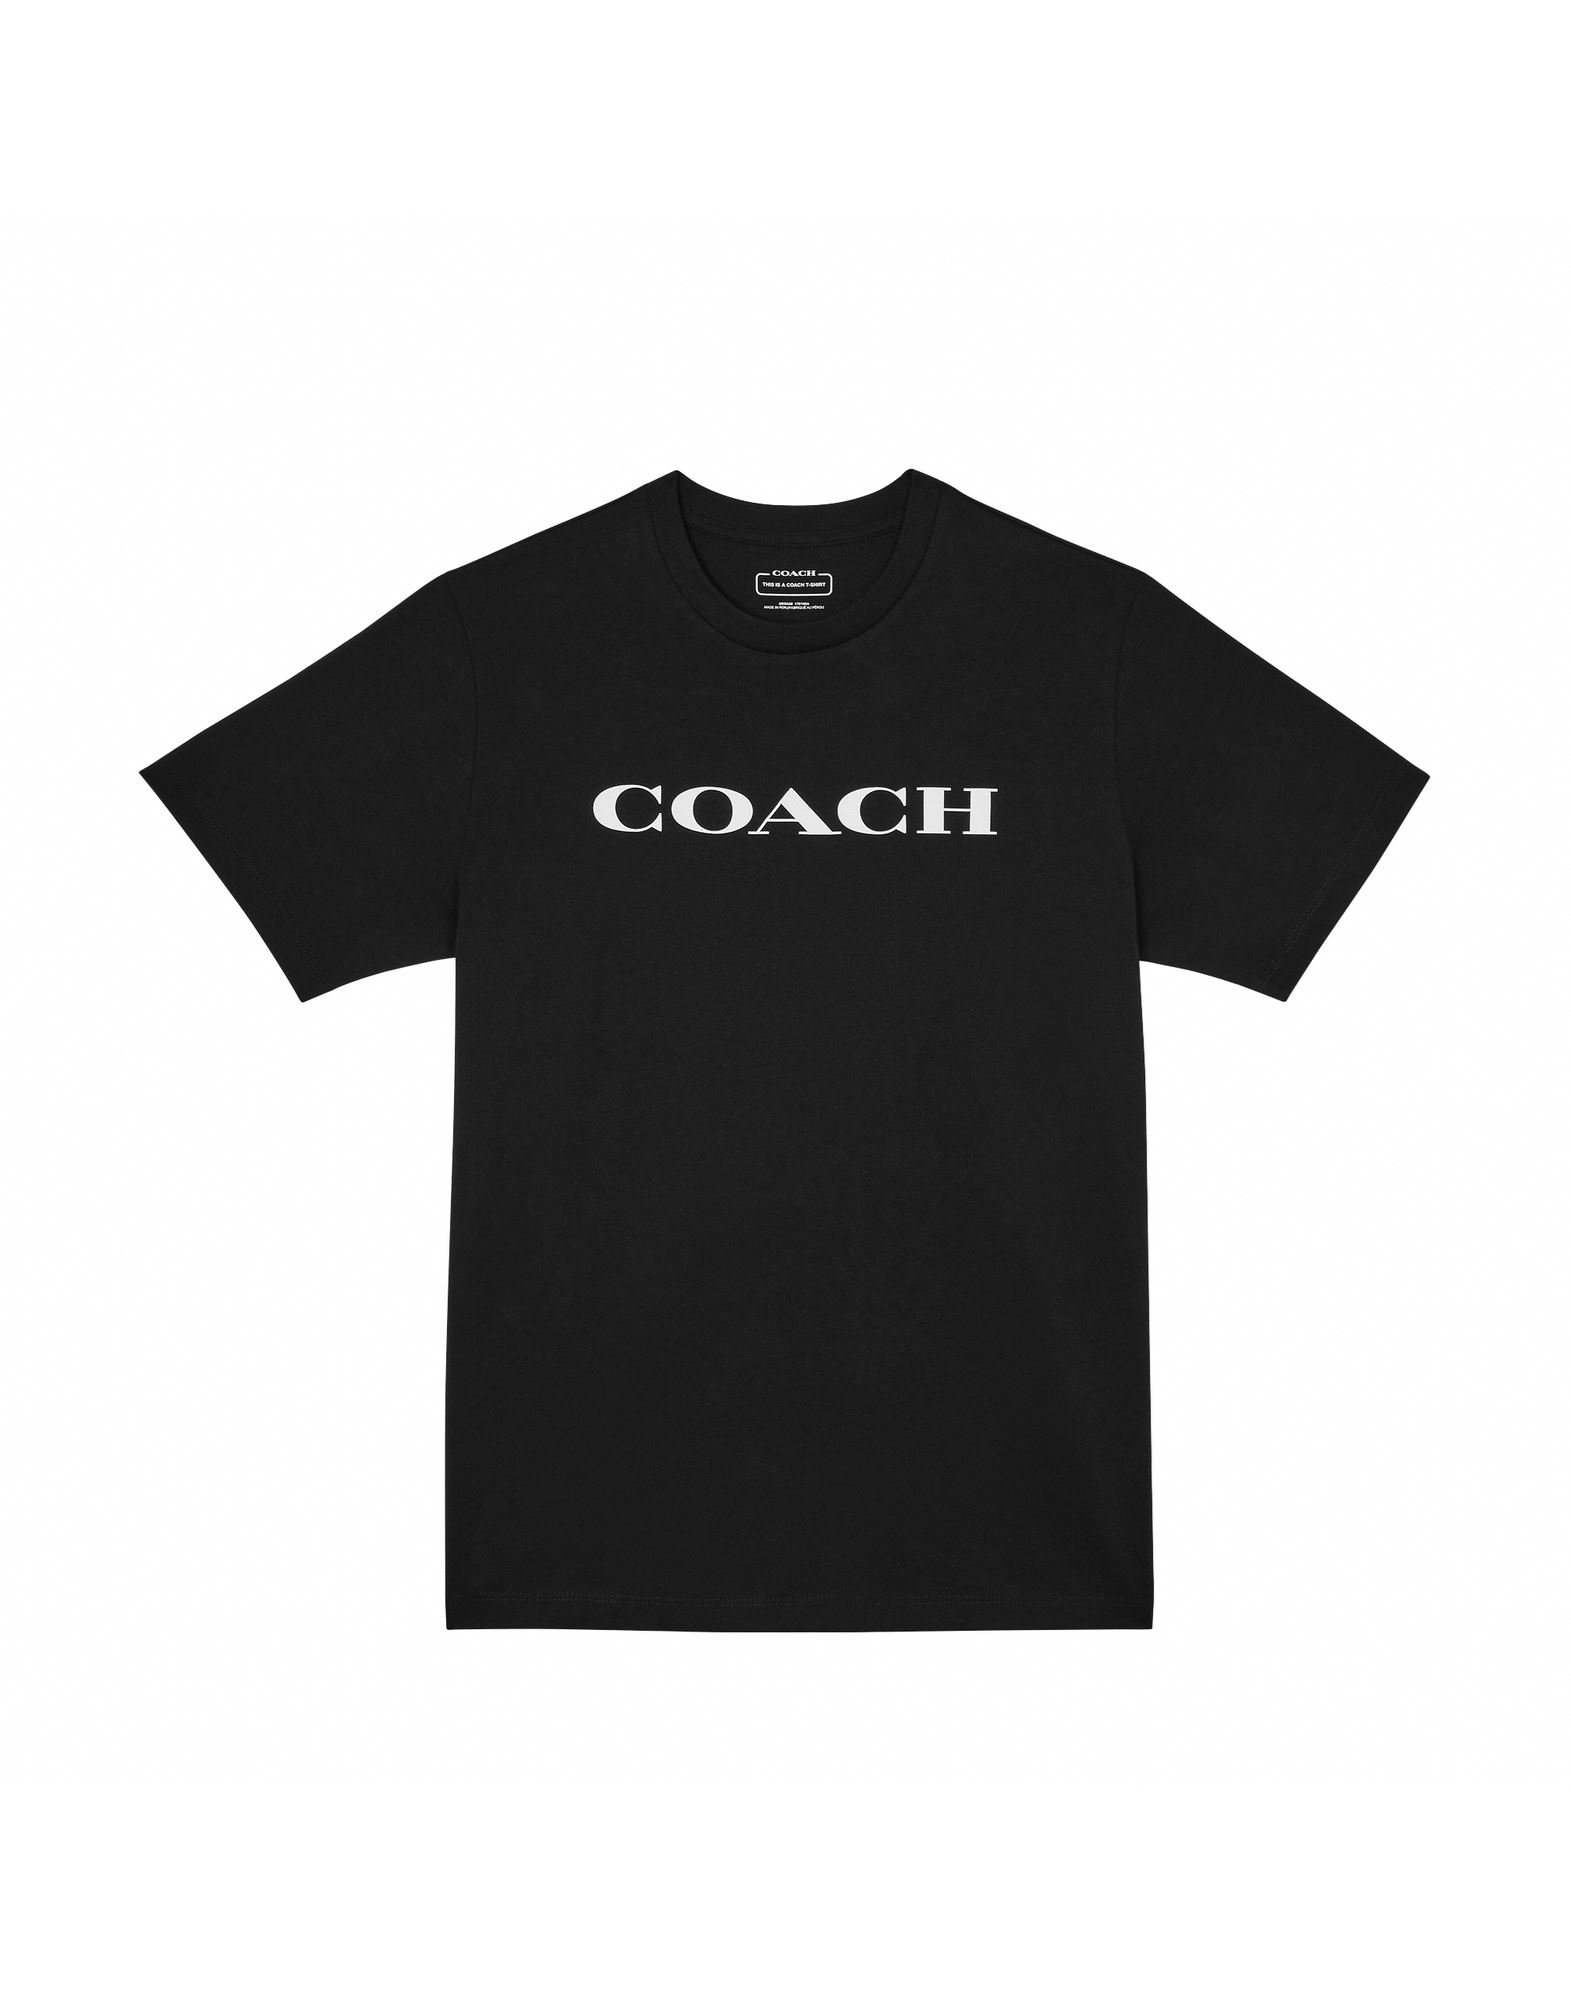 COACH T-shirts Herren Schwarz von COACH